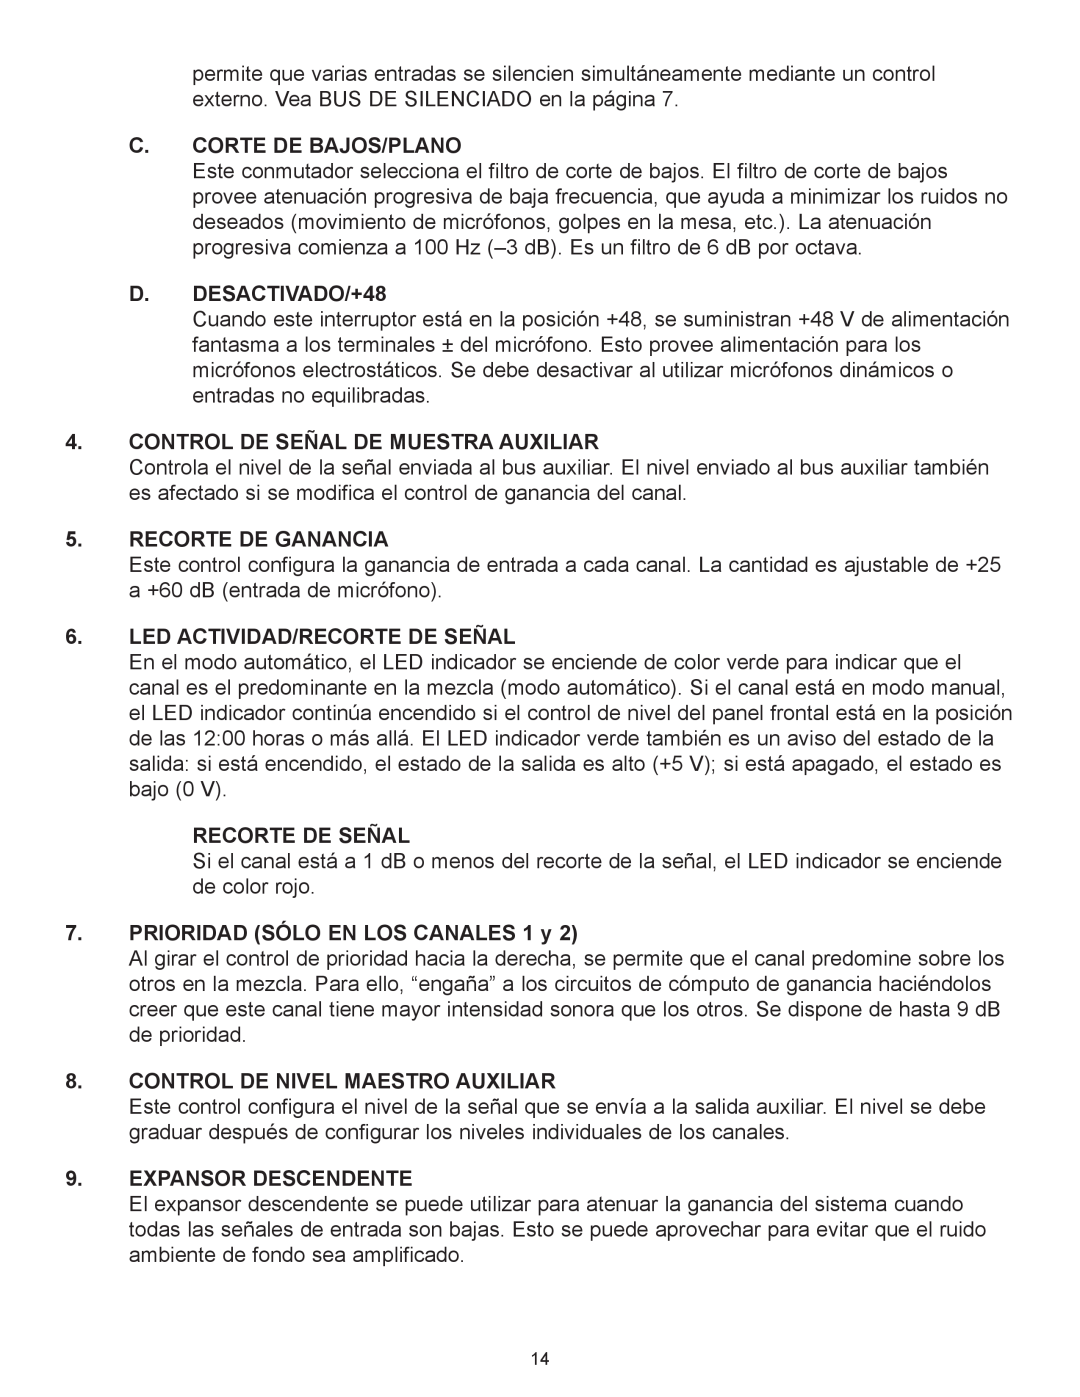 Peavey Automix2 manual C.Corte De Bajos/Plano, D.DESACTIVADO/+48, Control De Se„Al De Muestra Auxiliar, Recorte De Ganancia 